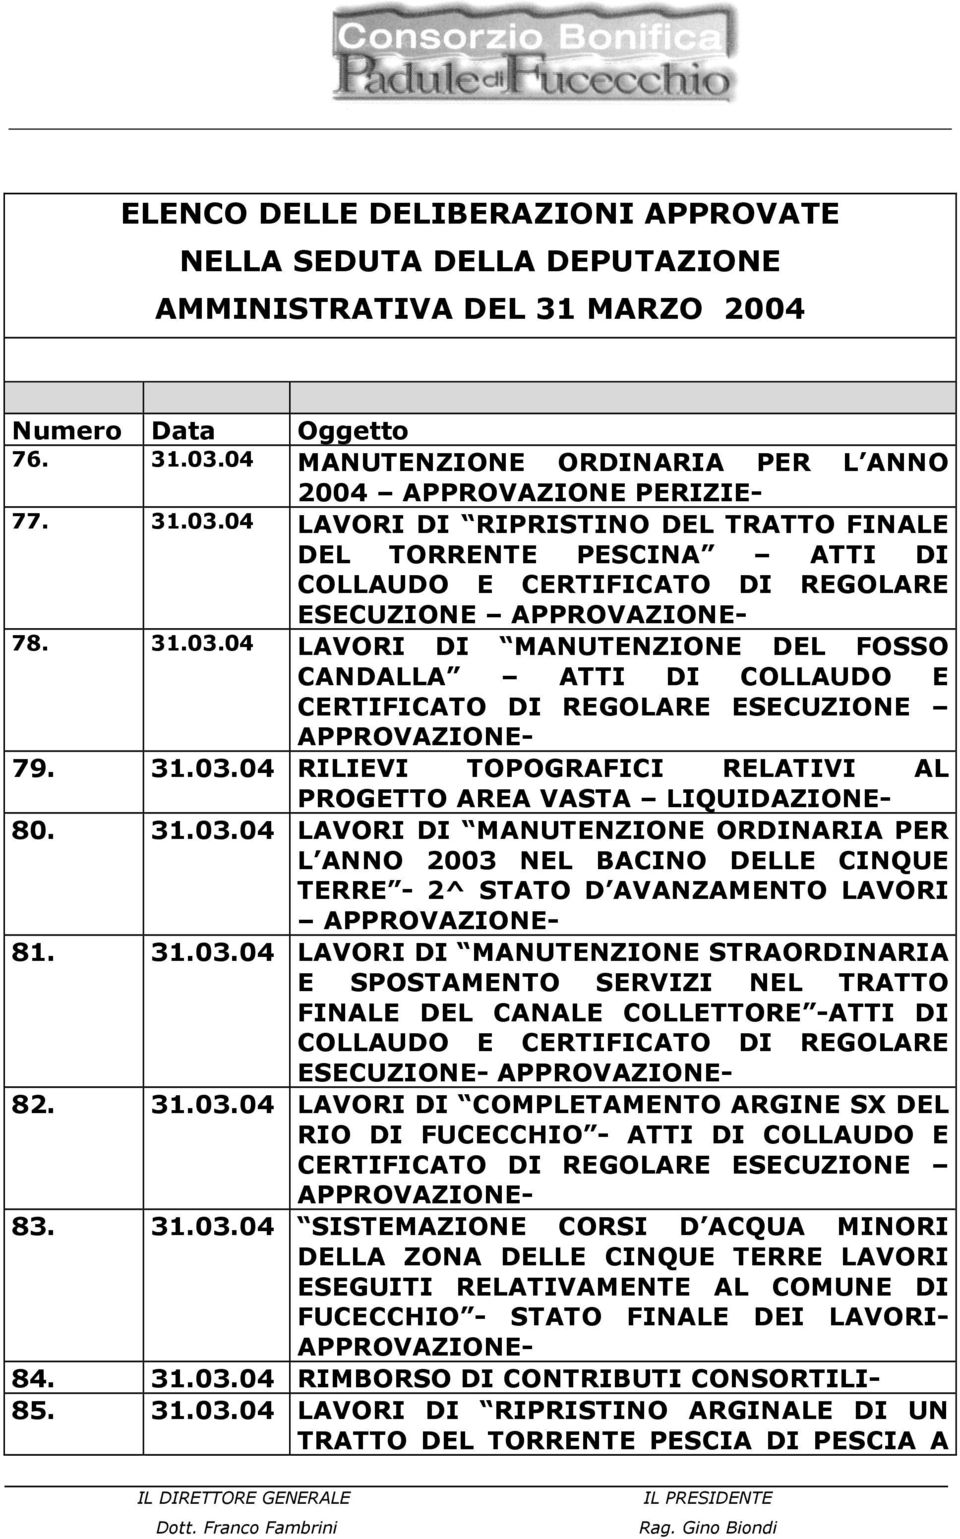 31.03.04 RILIEVI TOPOGRAFICI RELATIVI AL PROGETTO AREA VASTA LIQUIDAZIONE- 80. 31.03.04 LAVORI DI MANUTENZIONE ORDINARIA PER L ANNO 2003 NEL BACINO DELLE CINQUE TERRE - 2^ STATO D AVANZAMENTO LAVORI APPROVAZIONE- 81.